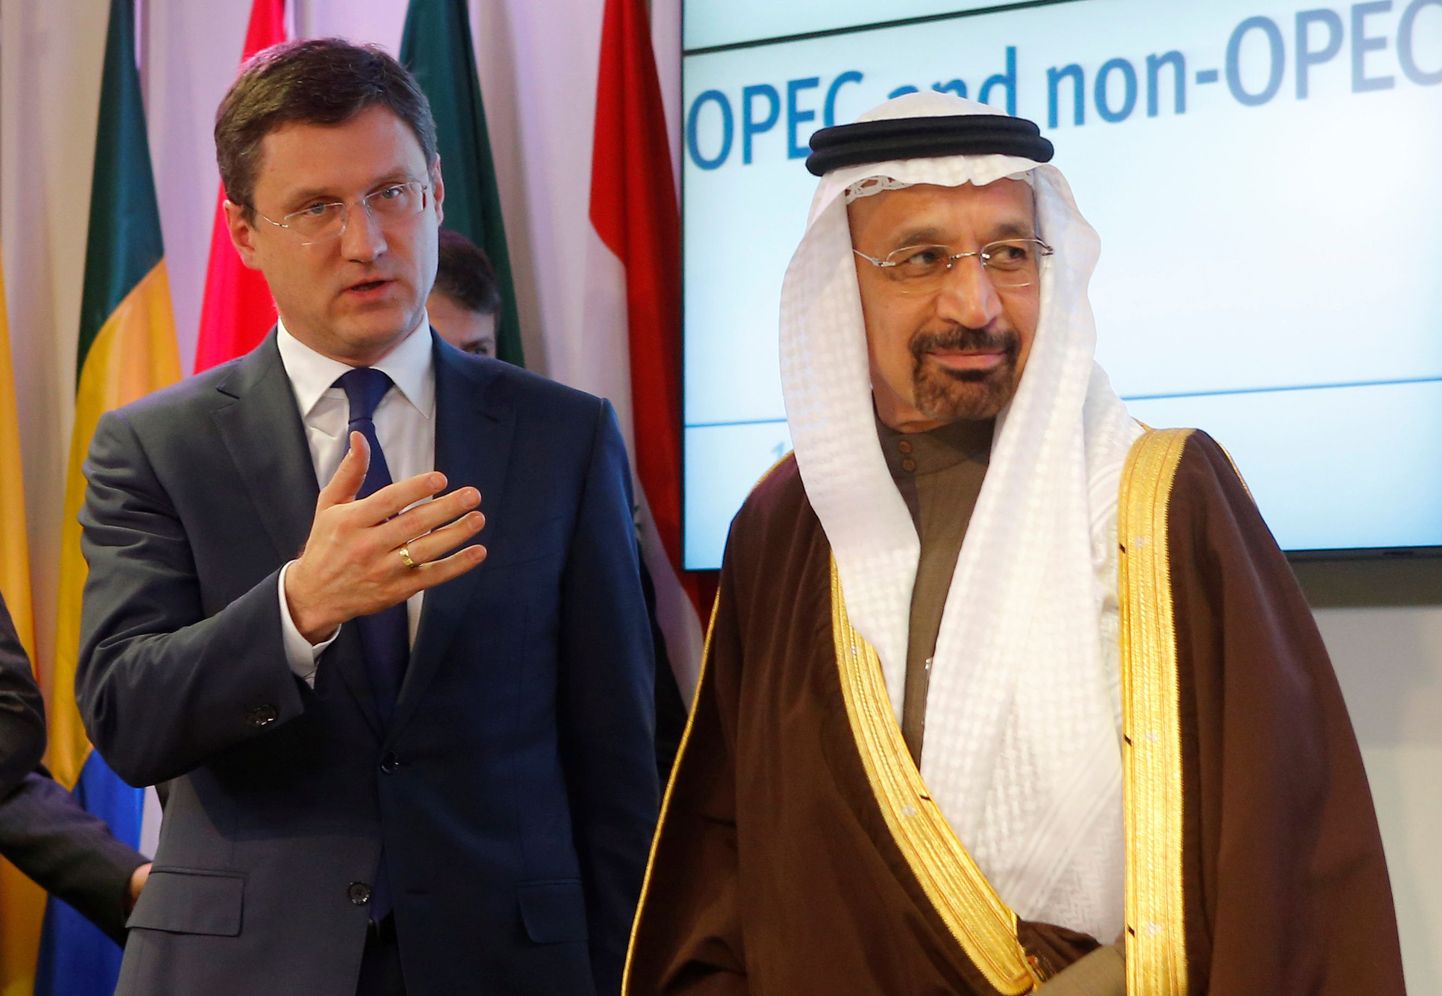 Venemaa energiaminister Aleksander Novak (vasakul) ja Saudi Araabia energiaminister Khalid al-Falih laupäeval Viinis toimunud pressikonverentsil.